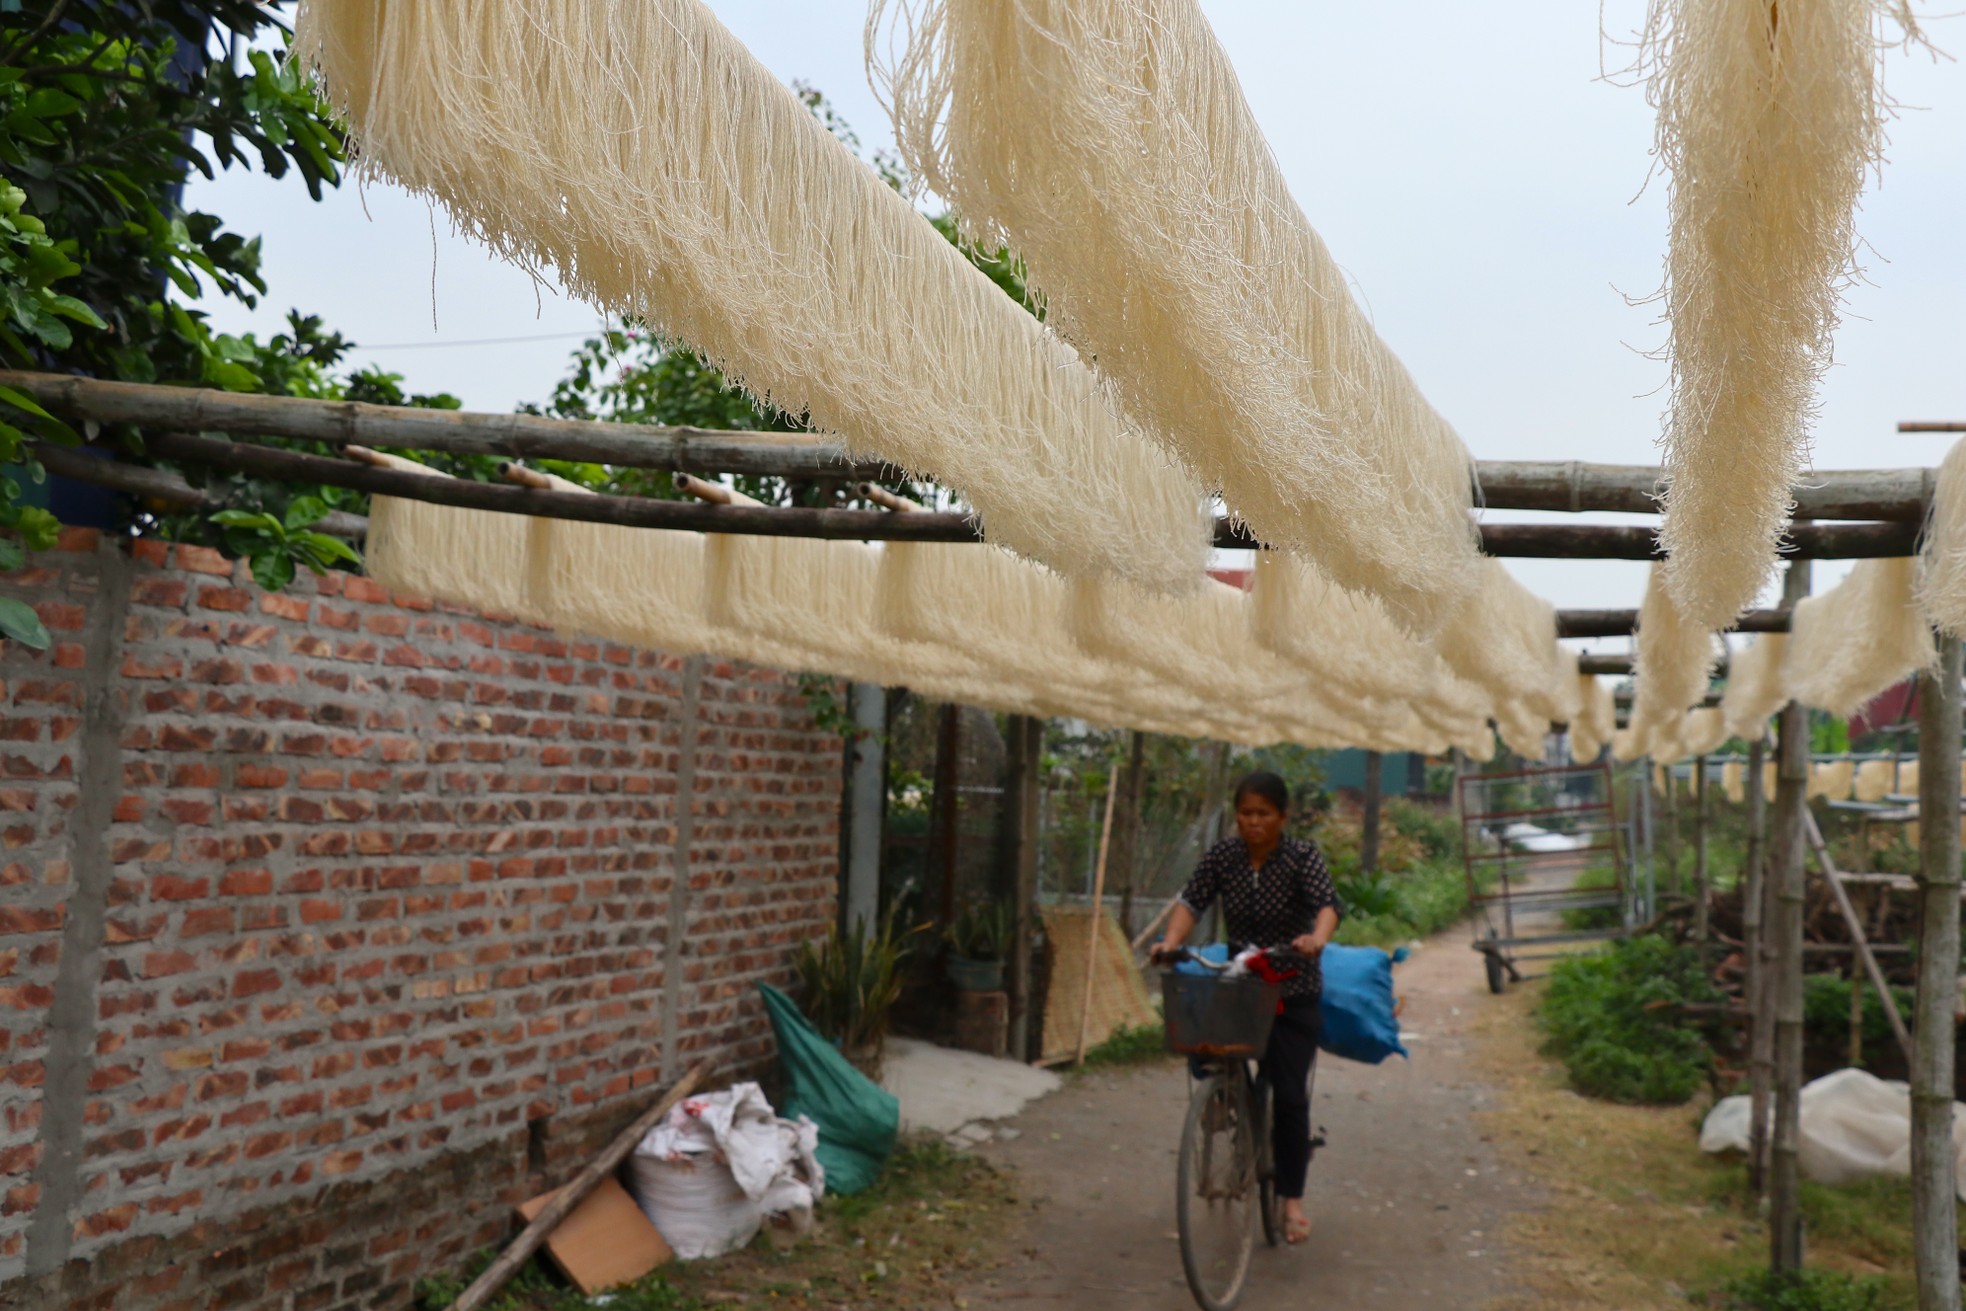 Nông dân làng miến dong Dương Liễu bảo nhau tăng công suất gấp 3 để đủ miến bán cho thương lái dịp Tết- Ảnh 2.